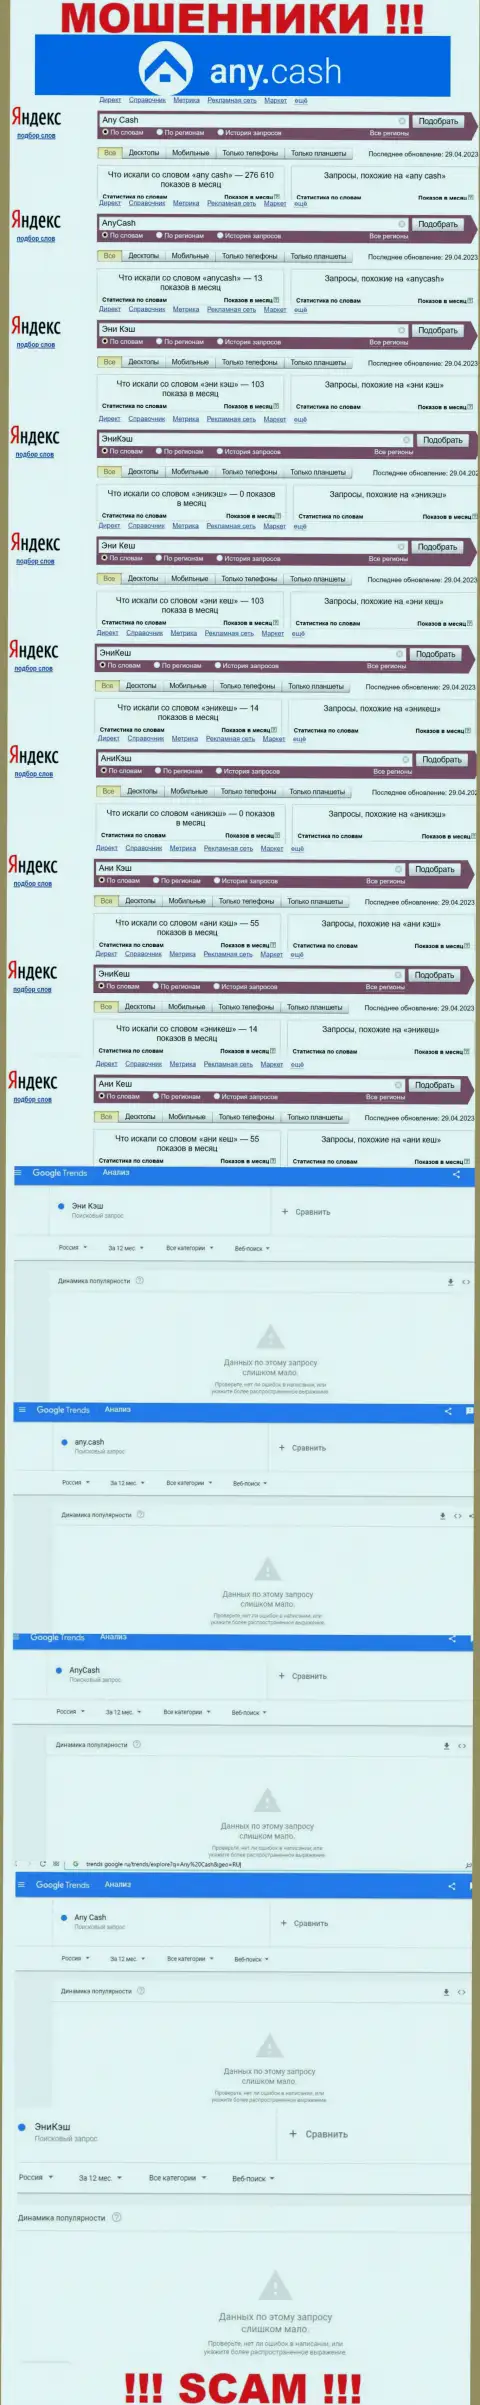 Скриншот статистических сведений online запросов по противоправно действующей конторе АниКэш